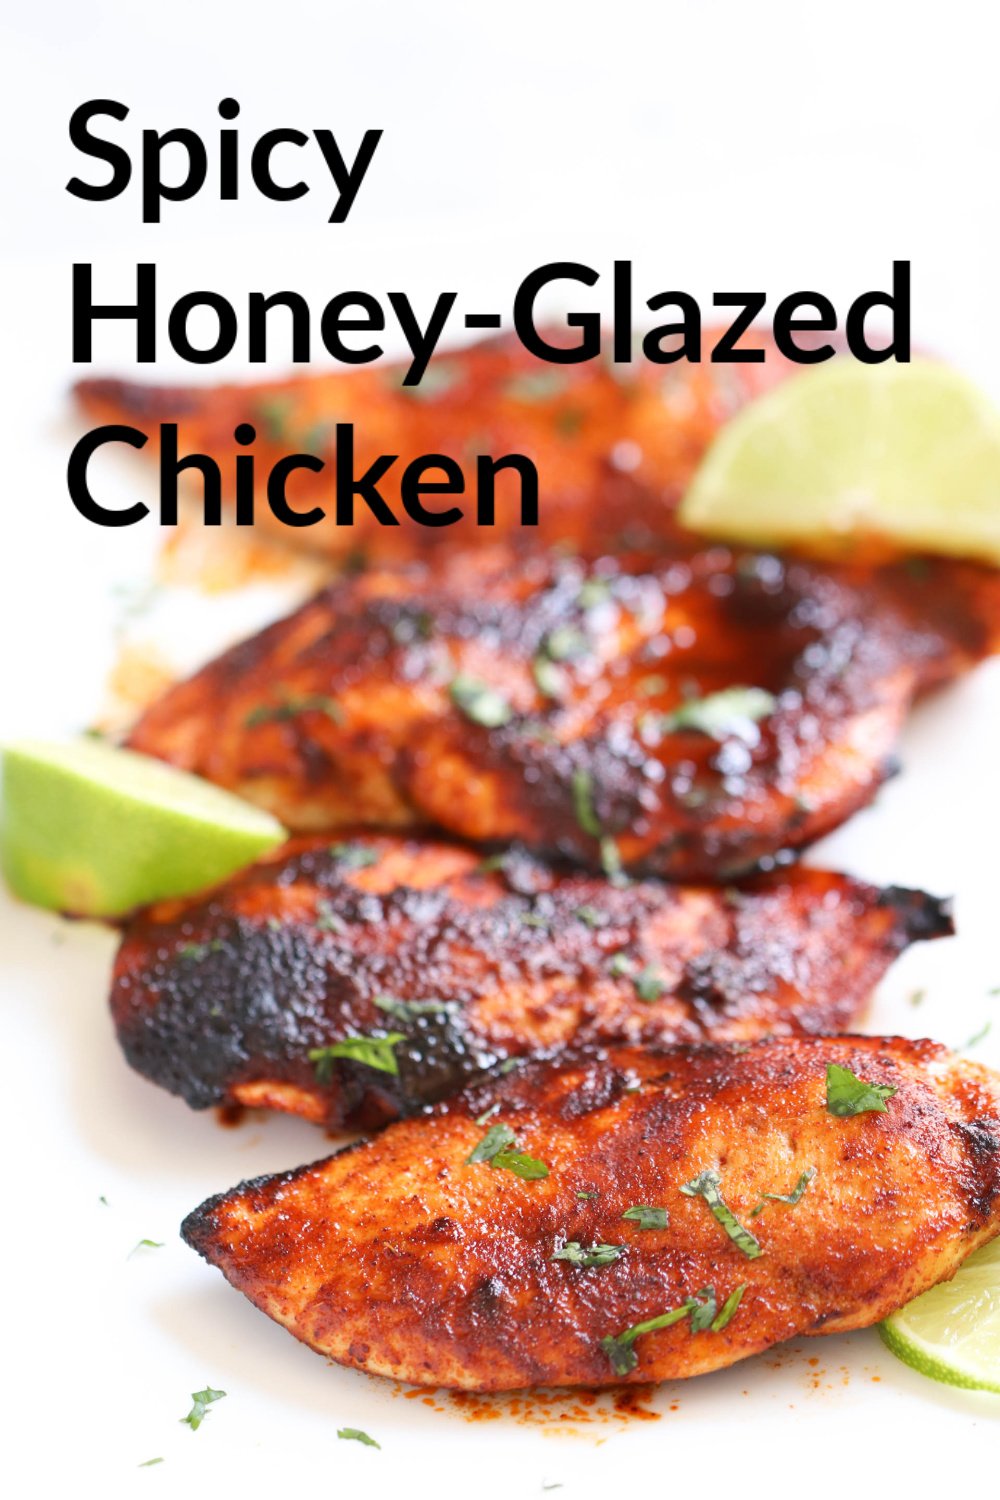 Spicy Honey-Glazed Chicken Recipe
